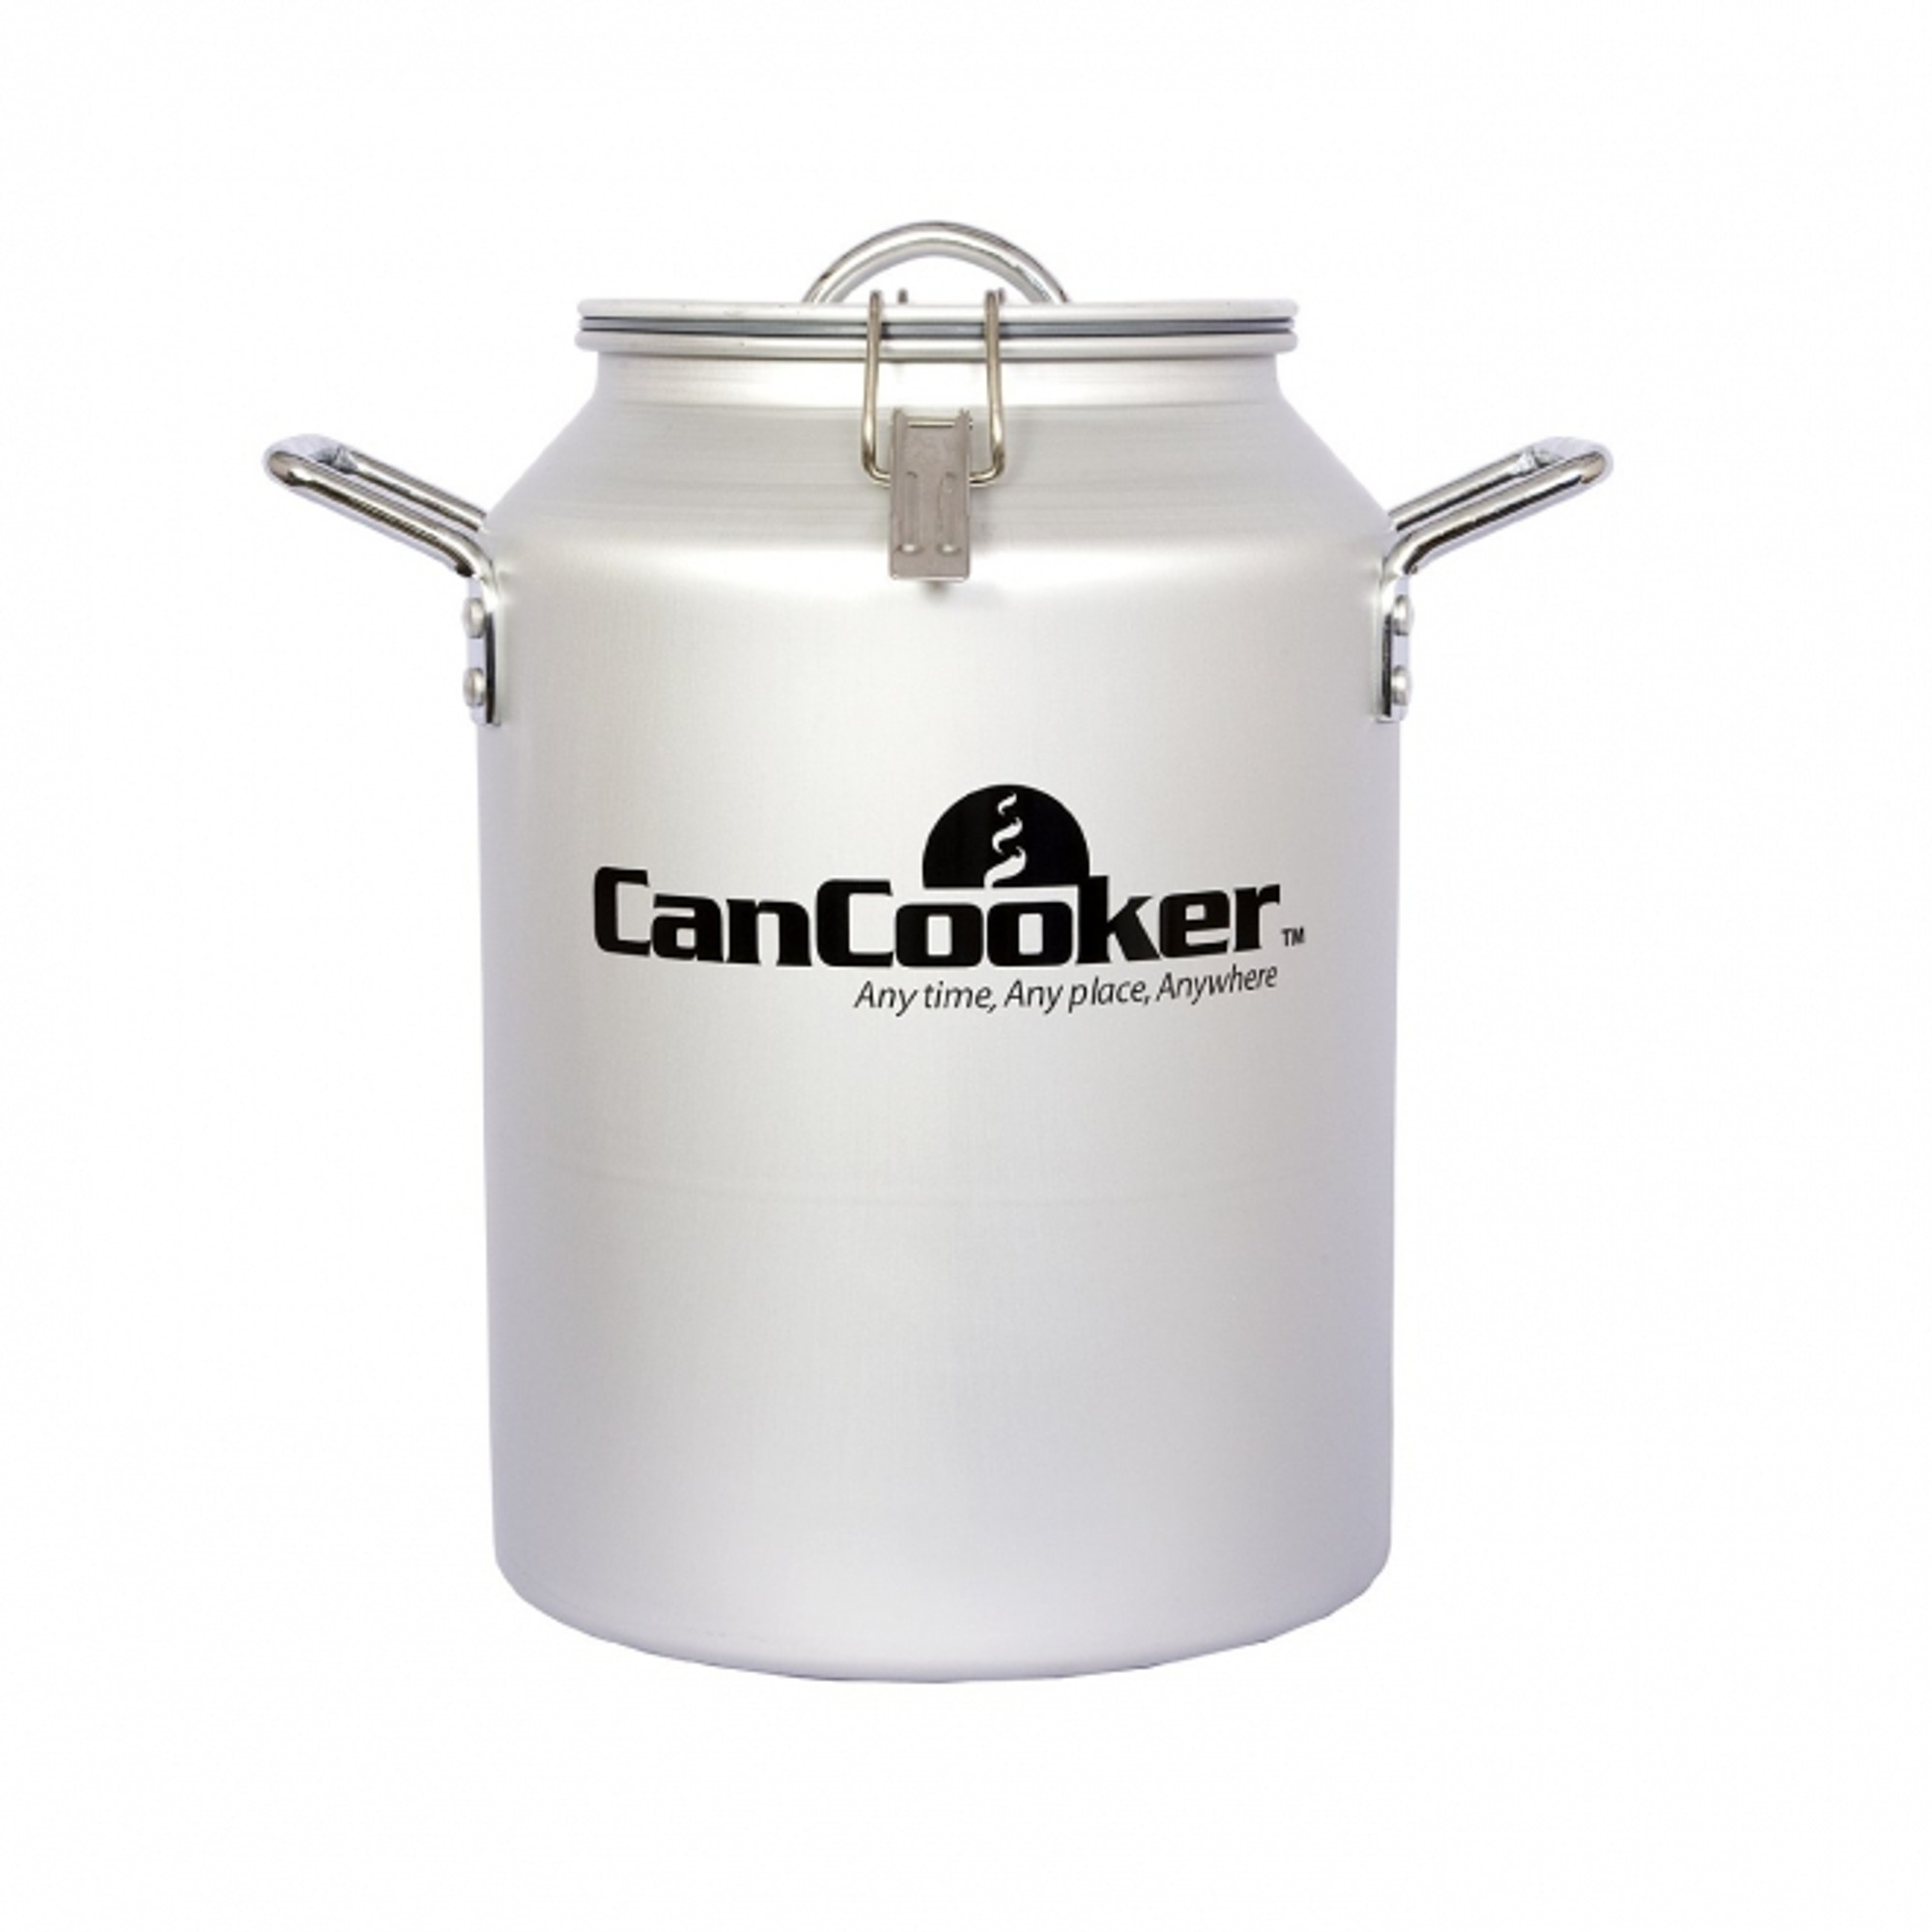 Cancooker Outdoor/Indoor Pressure Cooker